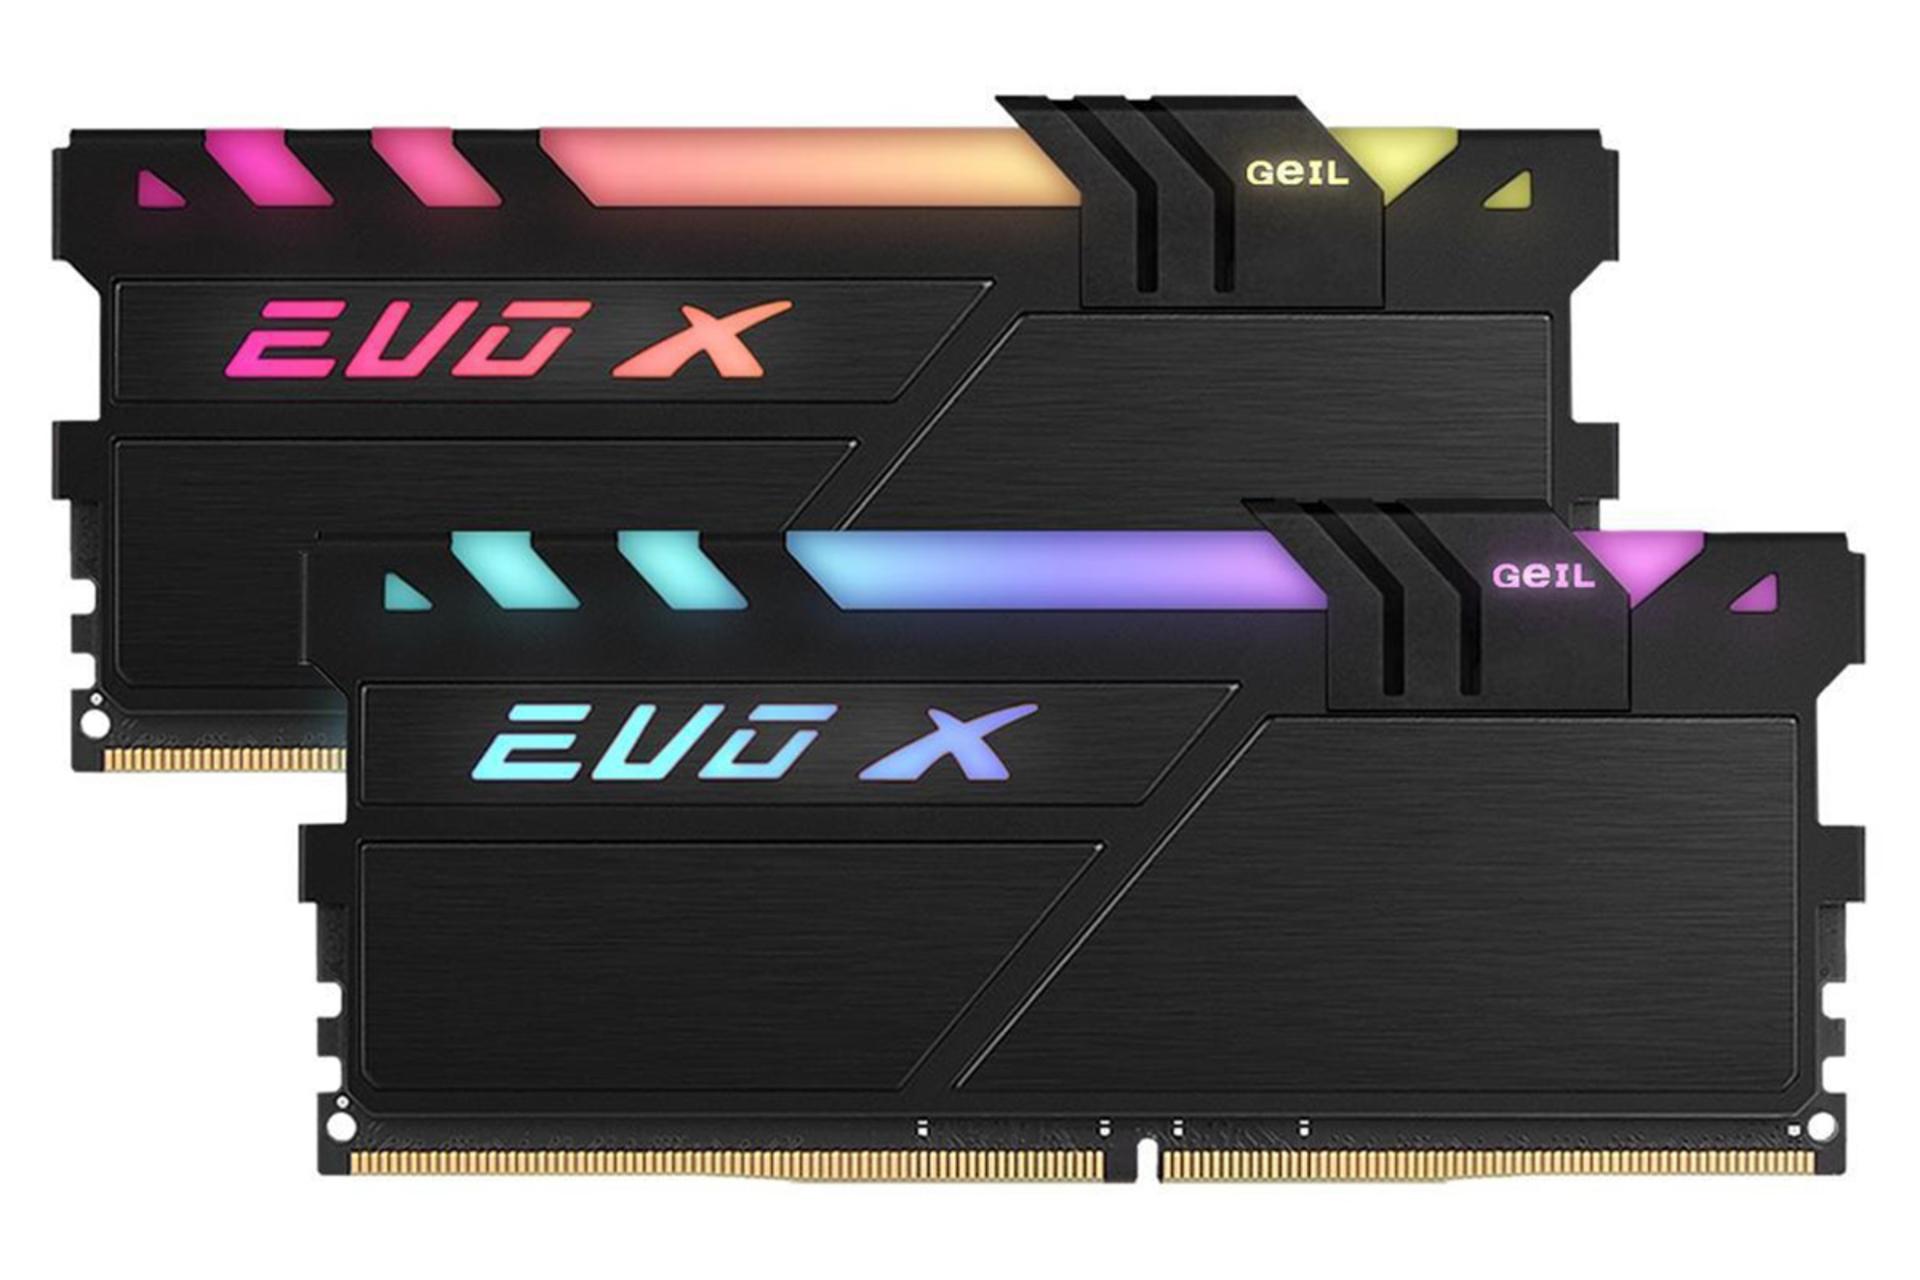 نمای جلوی رم گیل EVO X ظرفیت 16 گیگابایت (2x8) از نوع DDR4-3000